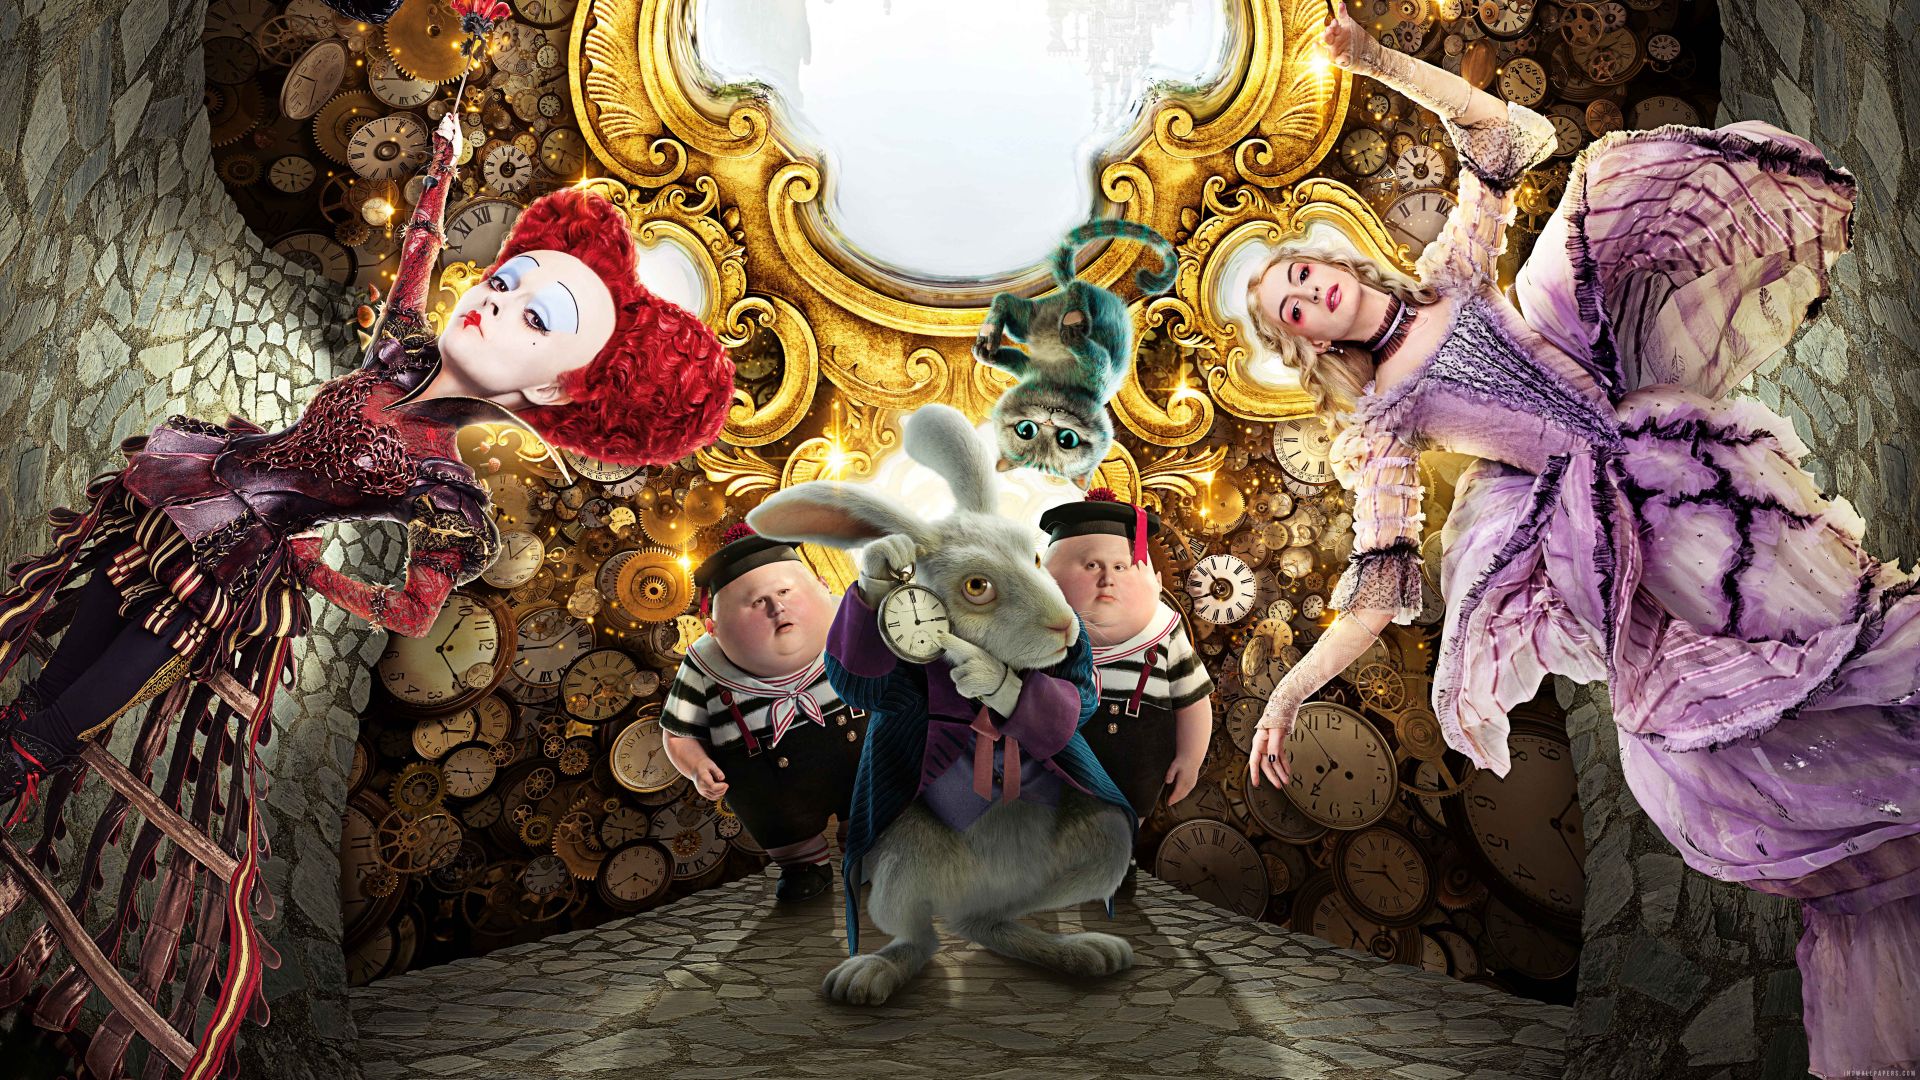 Алиса в Зазеркалье, кролик, красная королева, лучшие фильмы 2016, Alice Through the Looking Glass, rabbit, red queen, best movies of 2016 (horizontal)